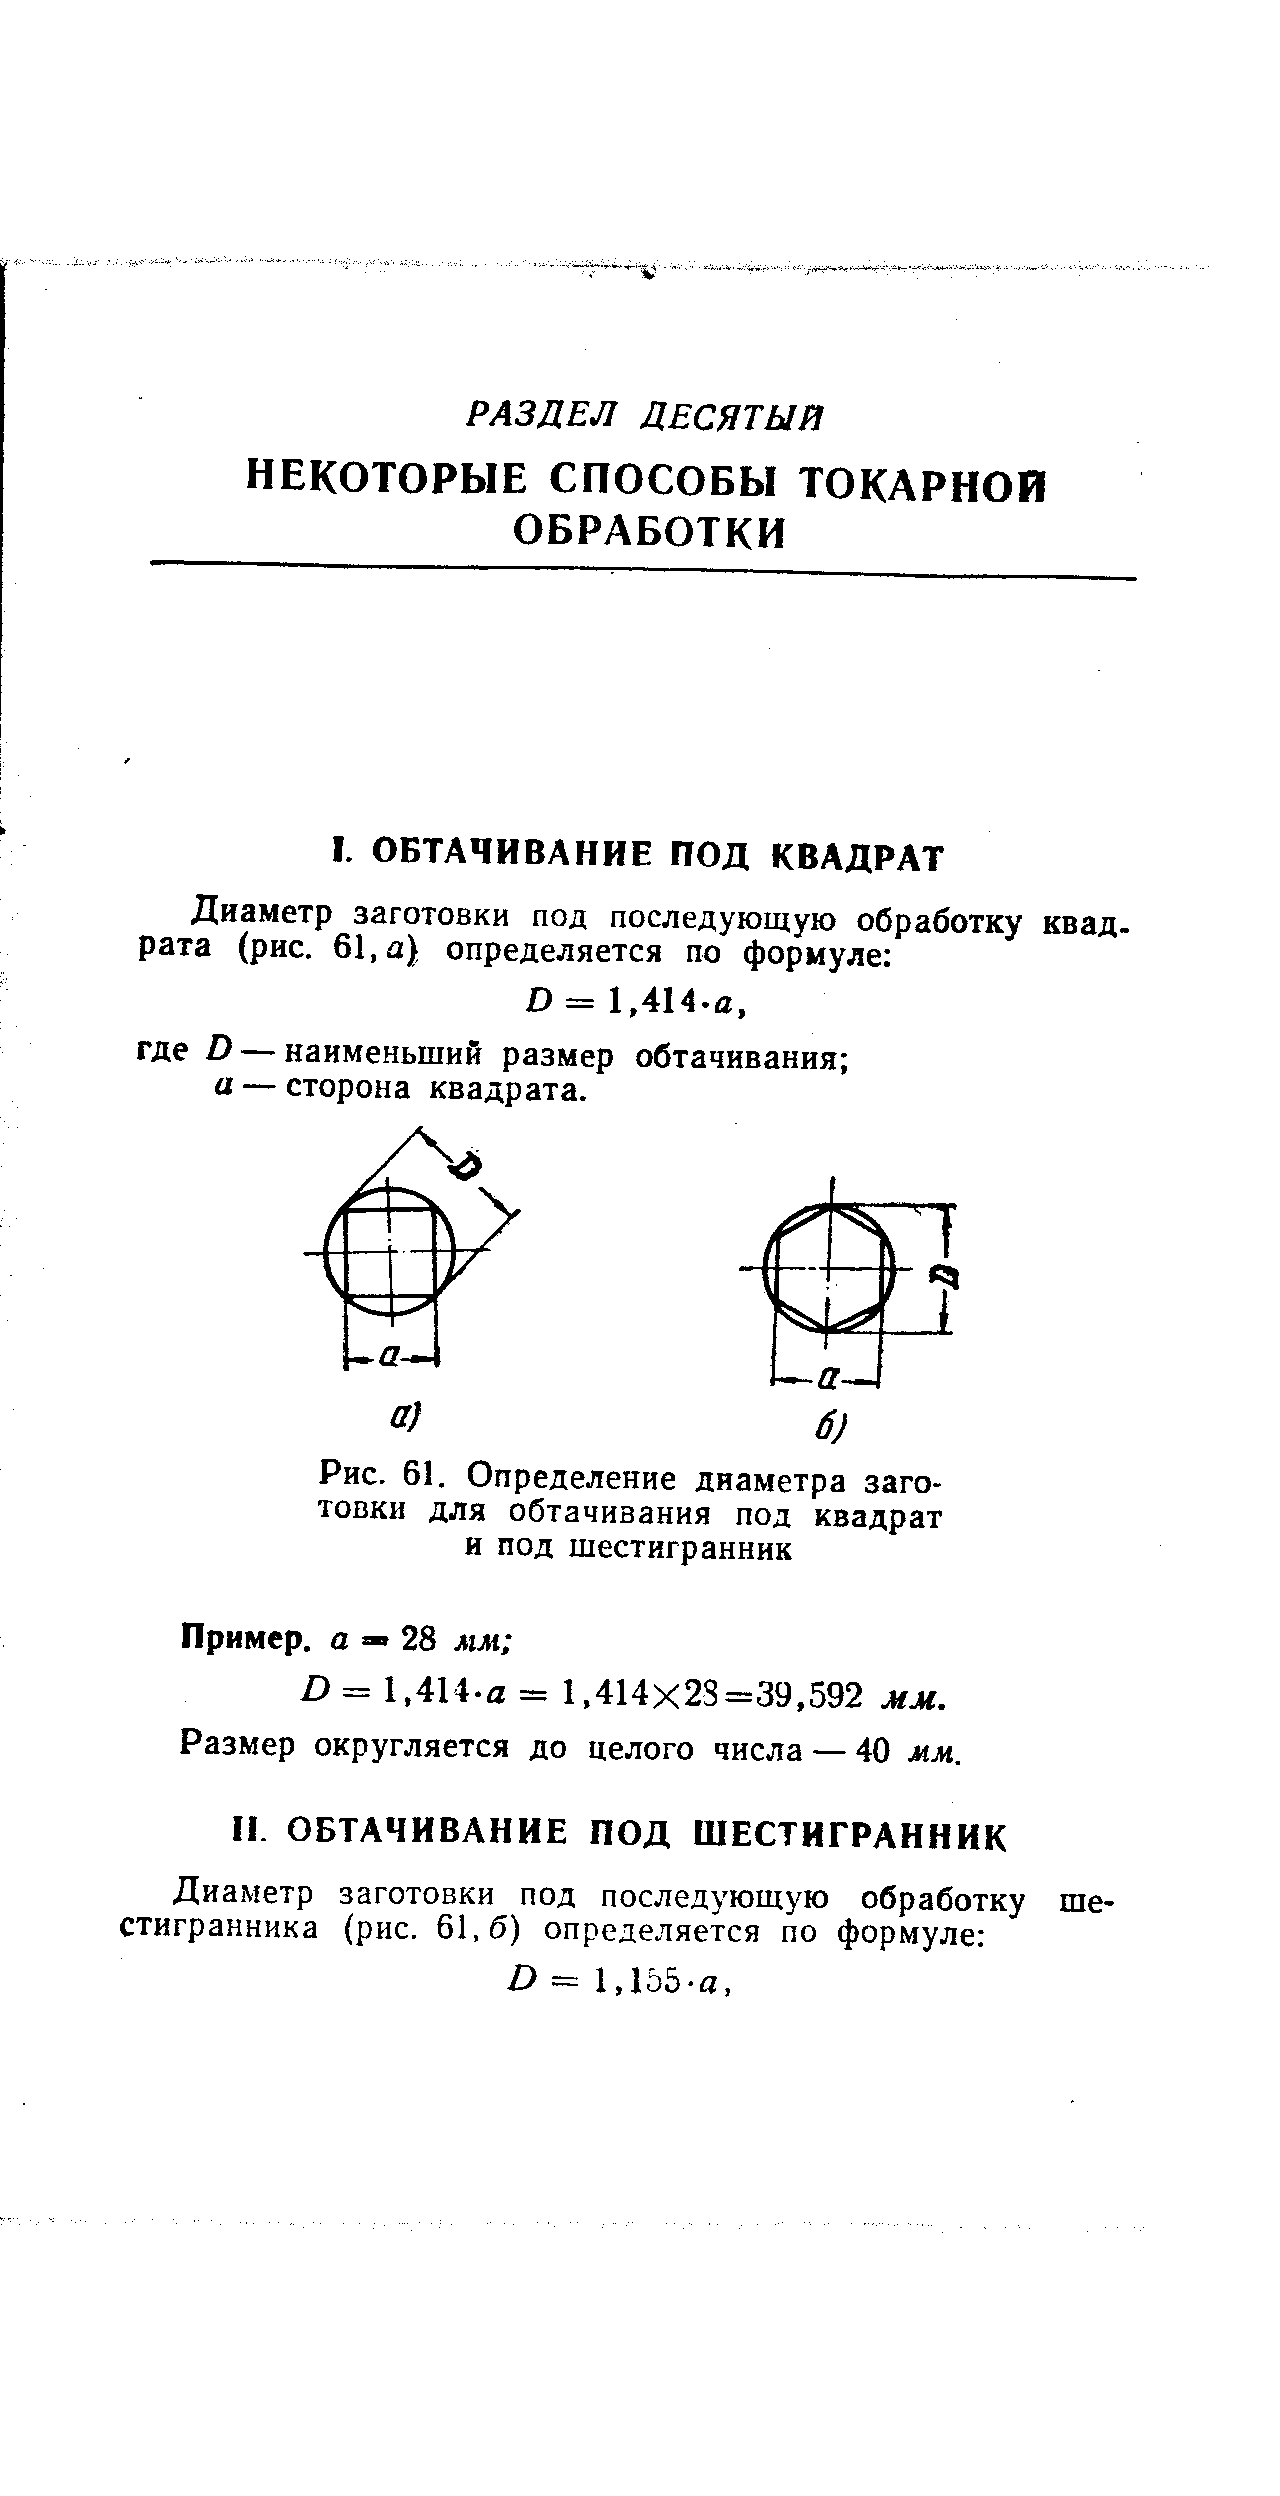 Рис. 61. Определение диаметра заготовки для обтачивания под квадрат и под шестигранник
